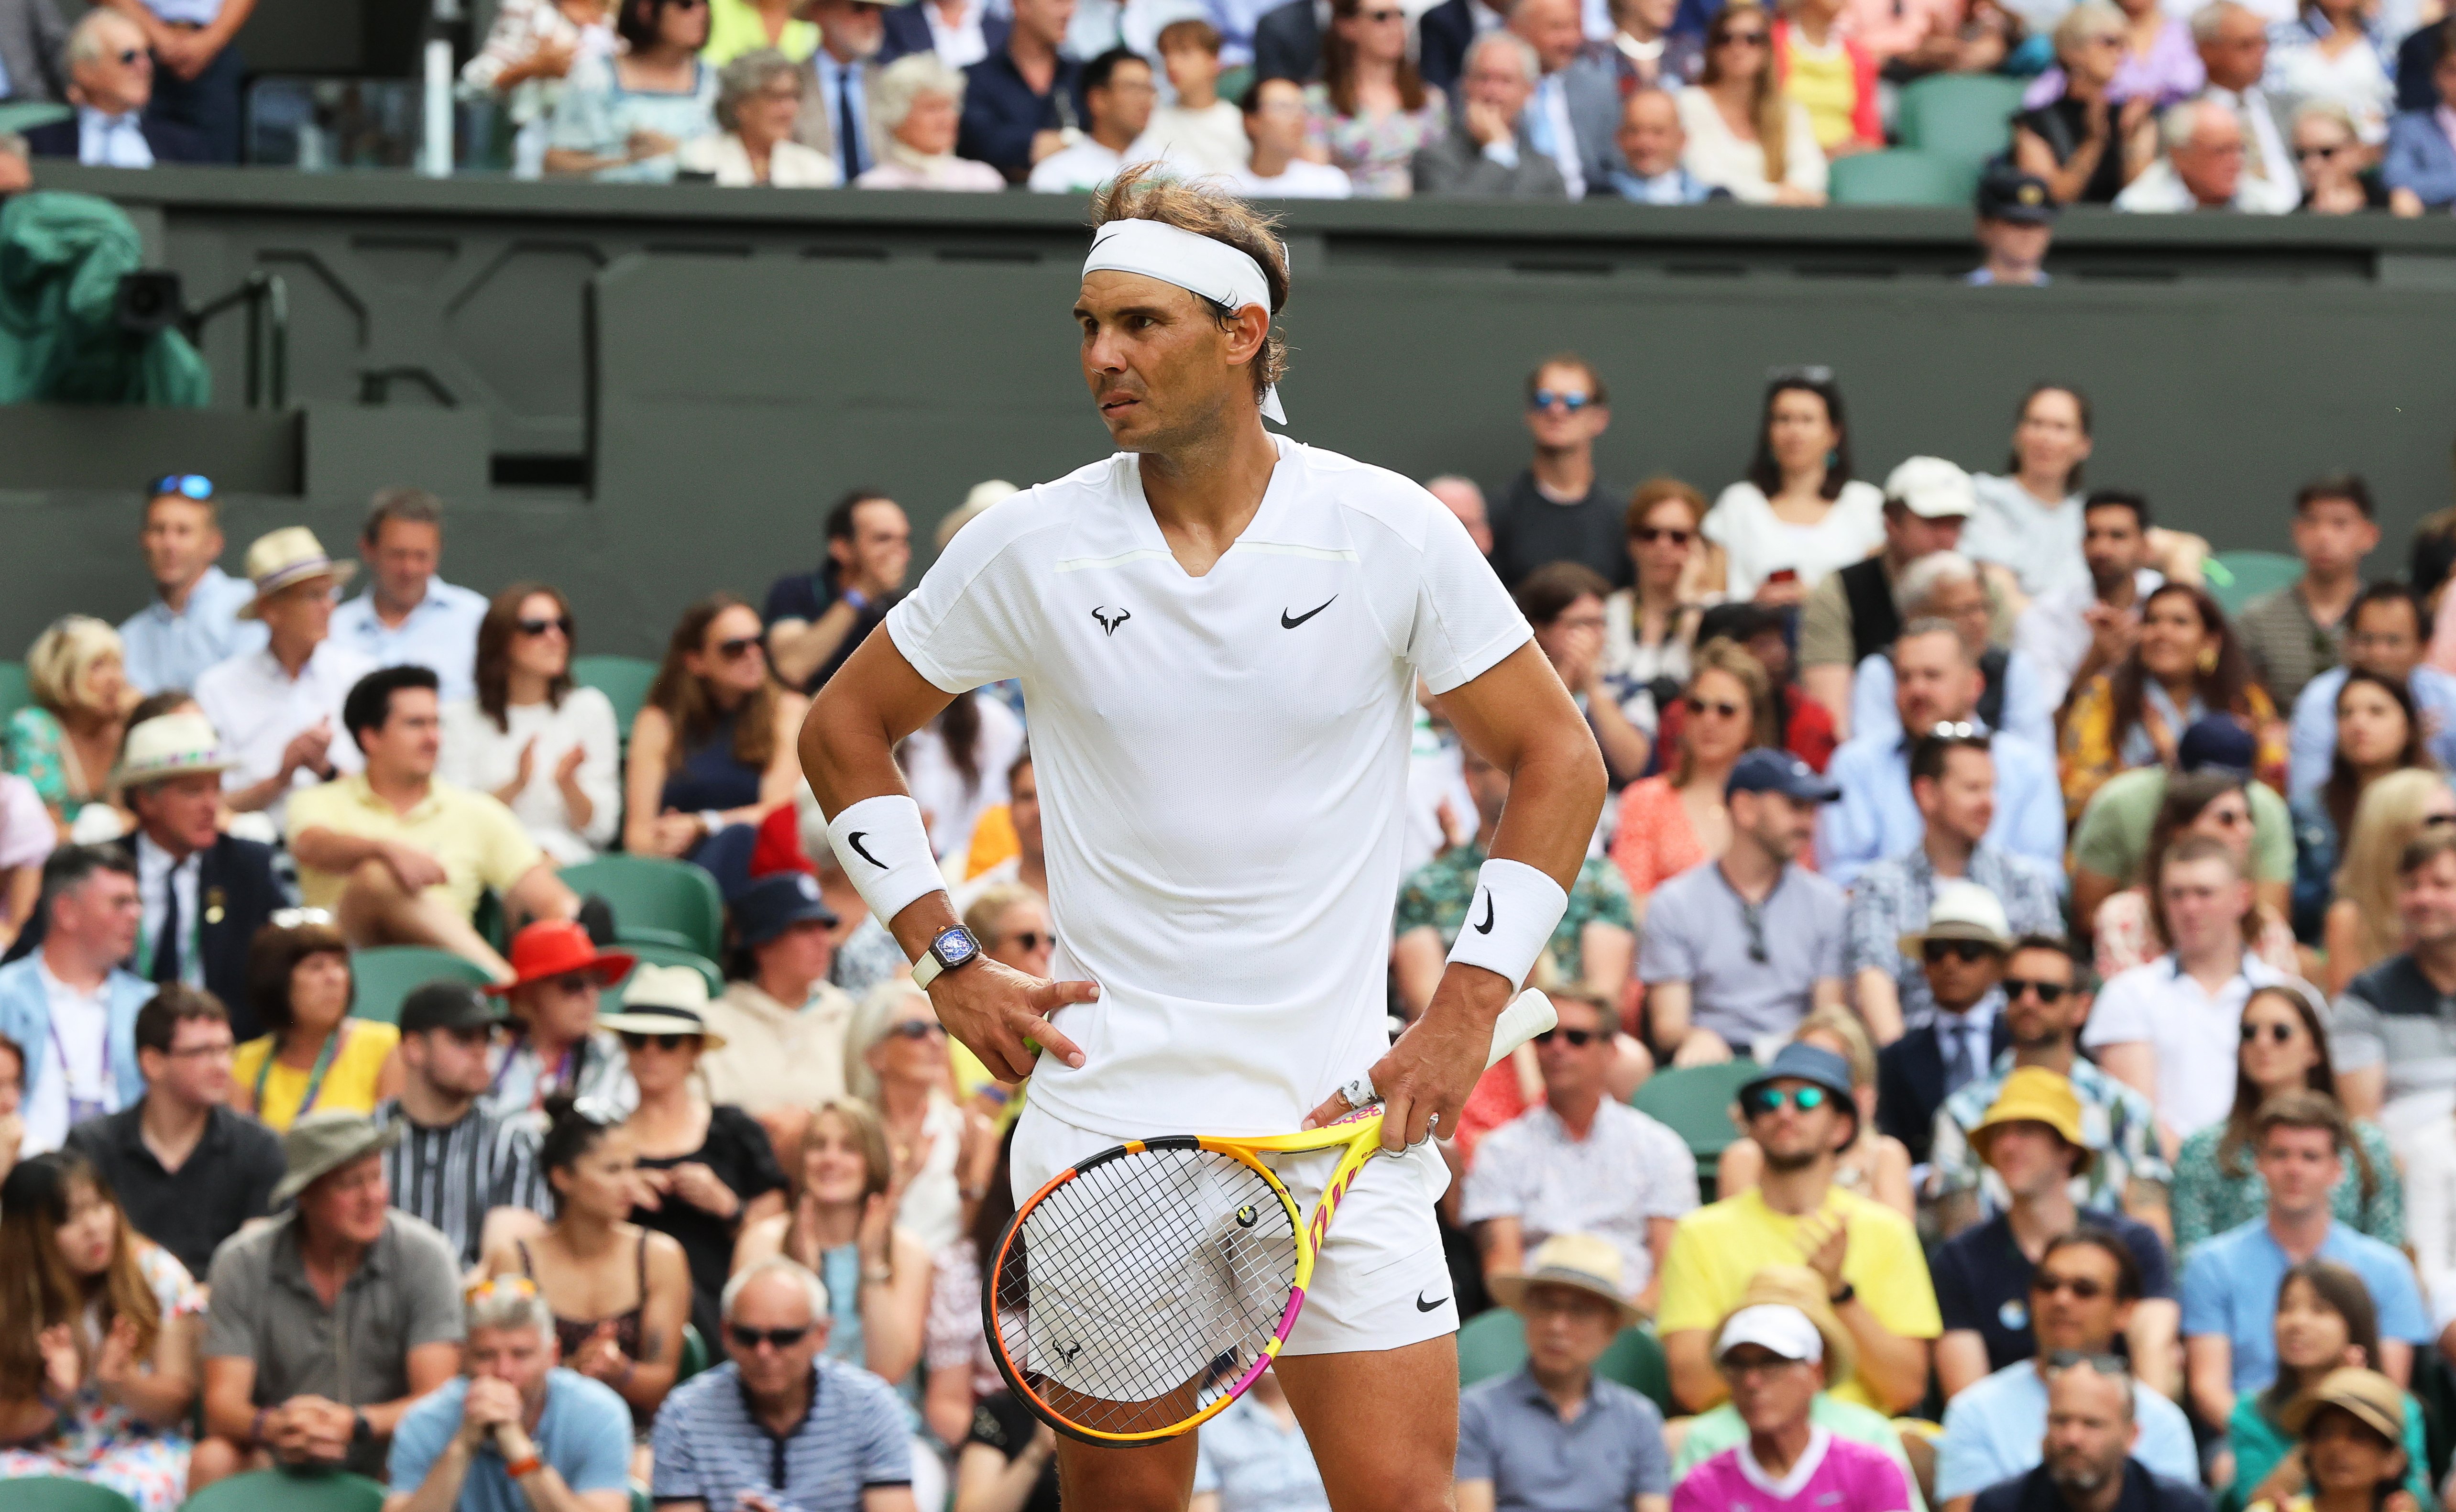 Rafa Nadal se retira de Wimbledon por la lesión abdominal: "No tiene sentido seguir compitiendo así"